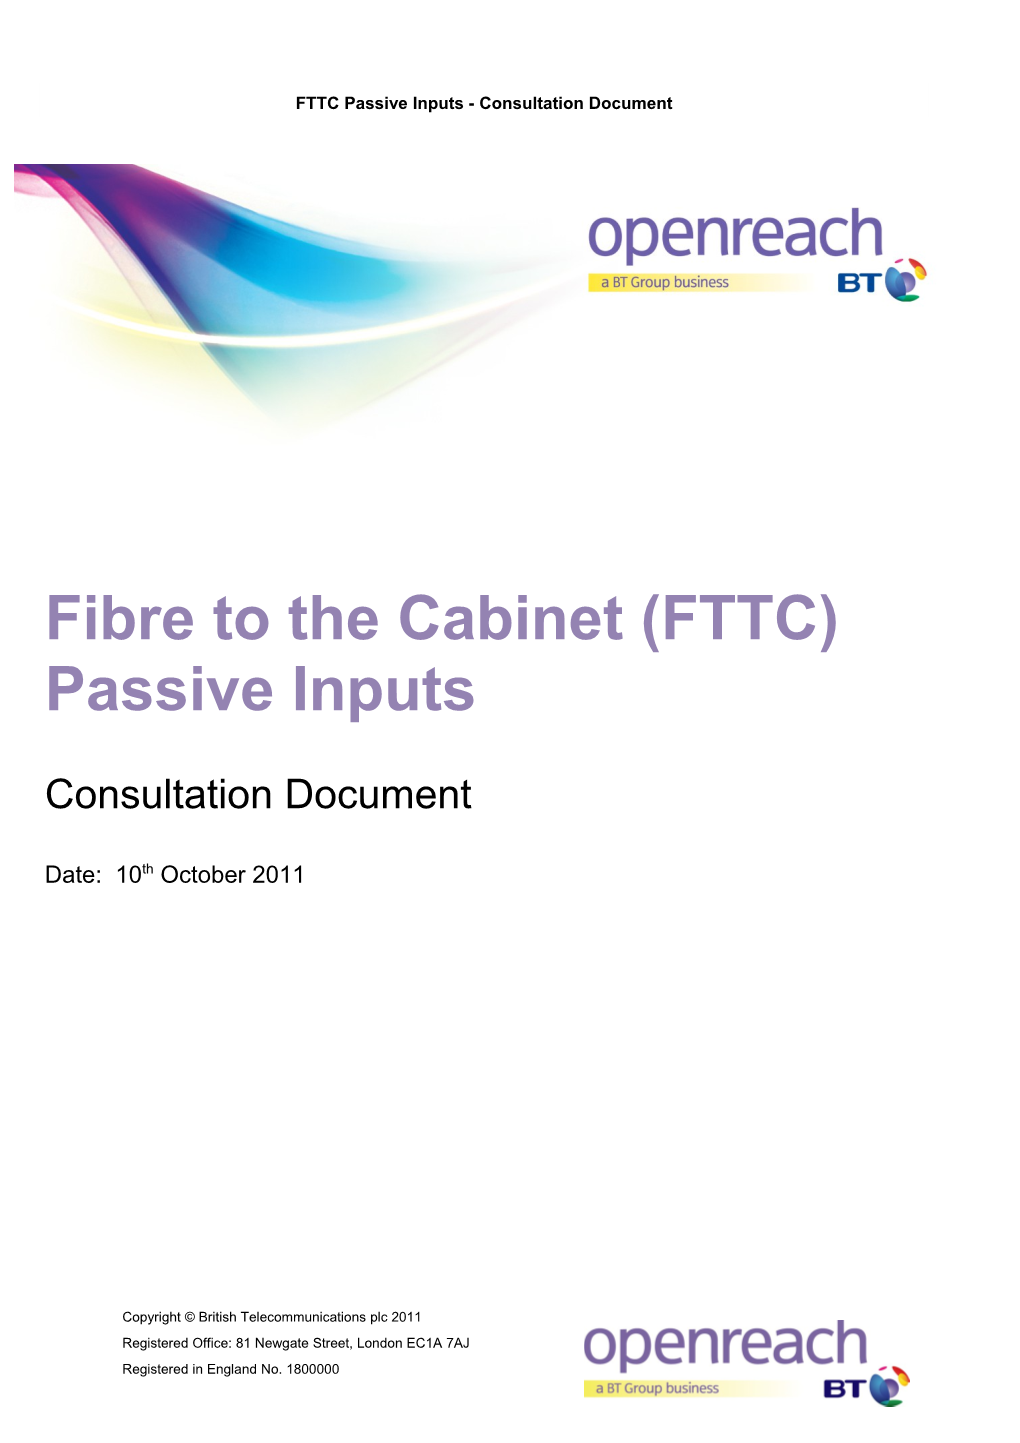 FTTC Passives Inputs - Consultation Document